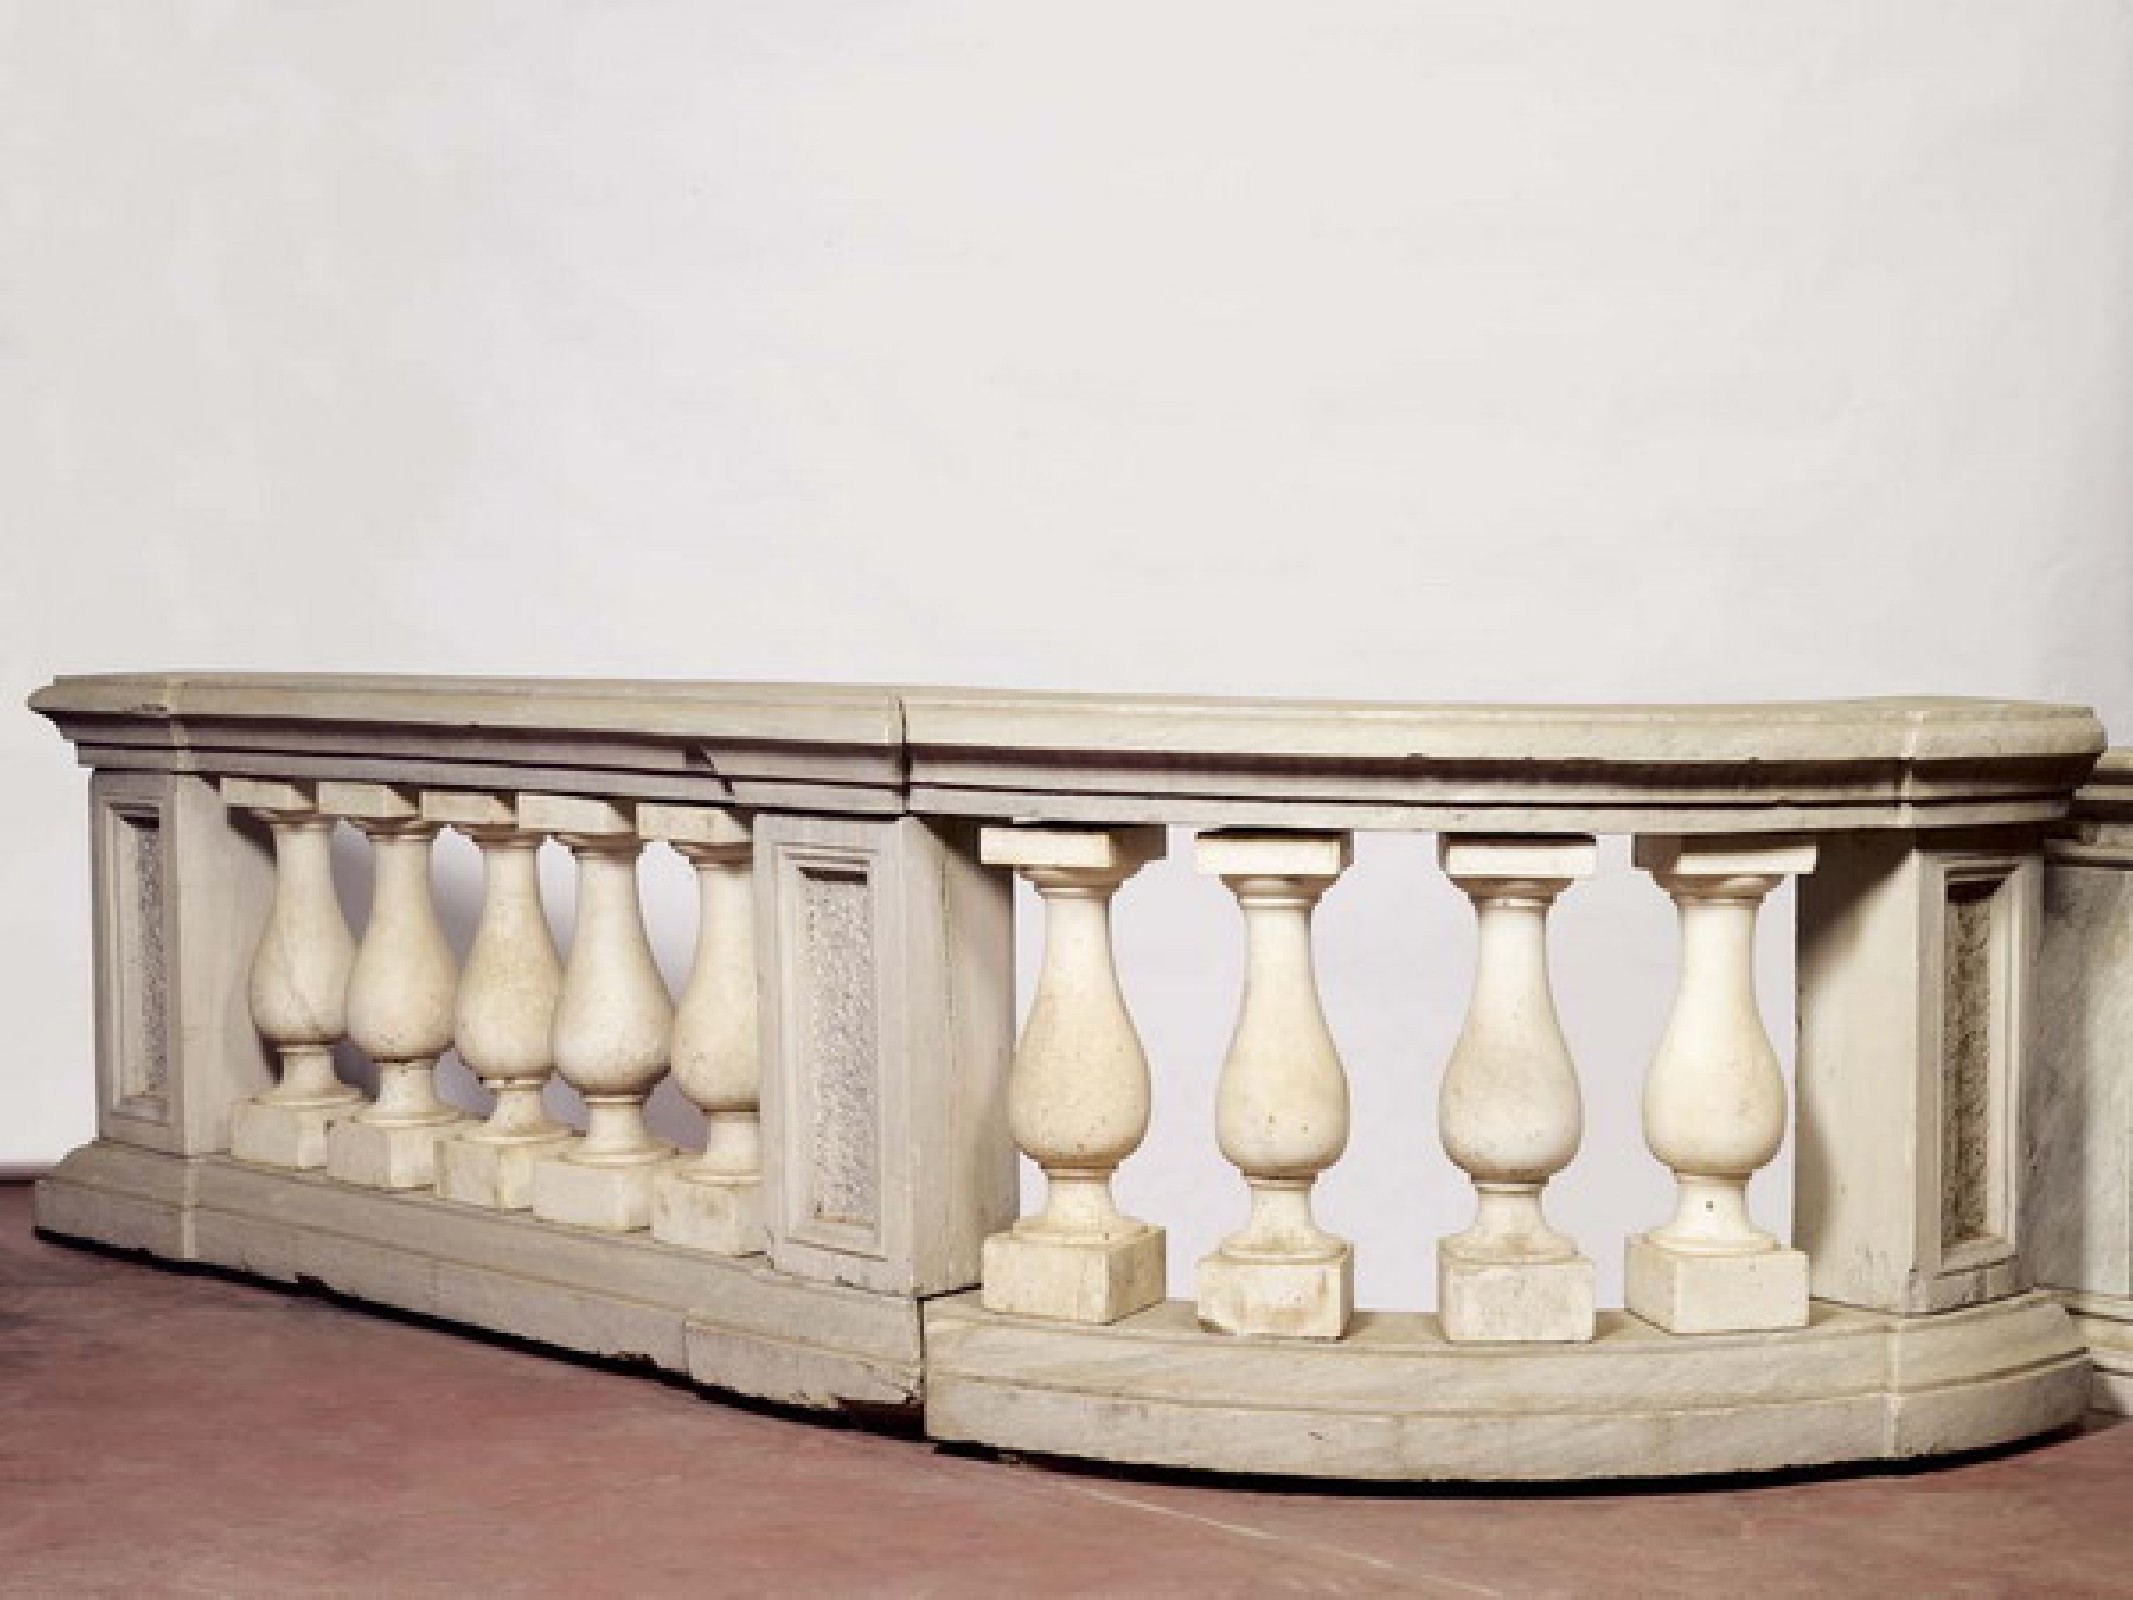 Antica coppia di balaustre in marmo.  - Balaustre antiche - Architettura - Prodotti - Antichità Fiorillo